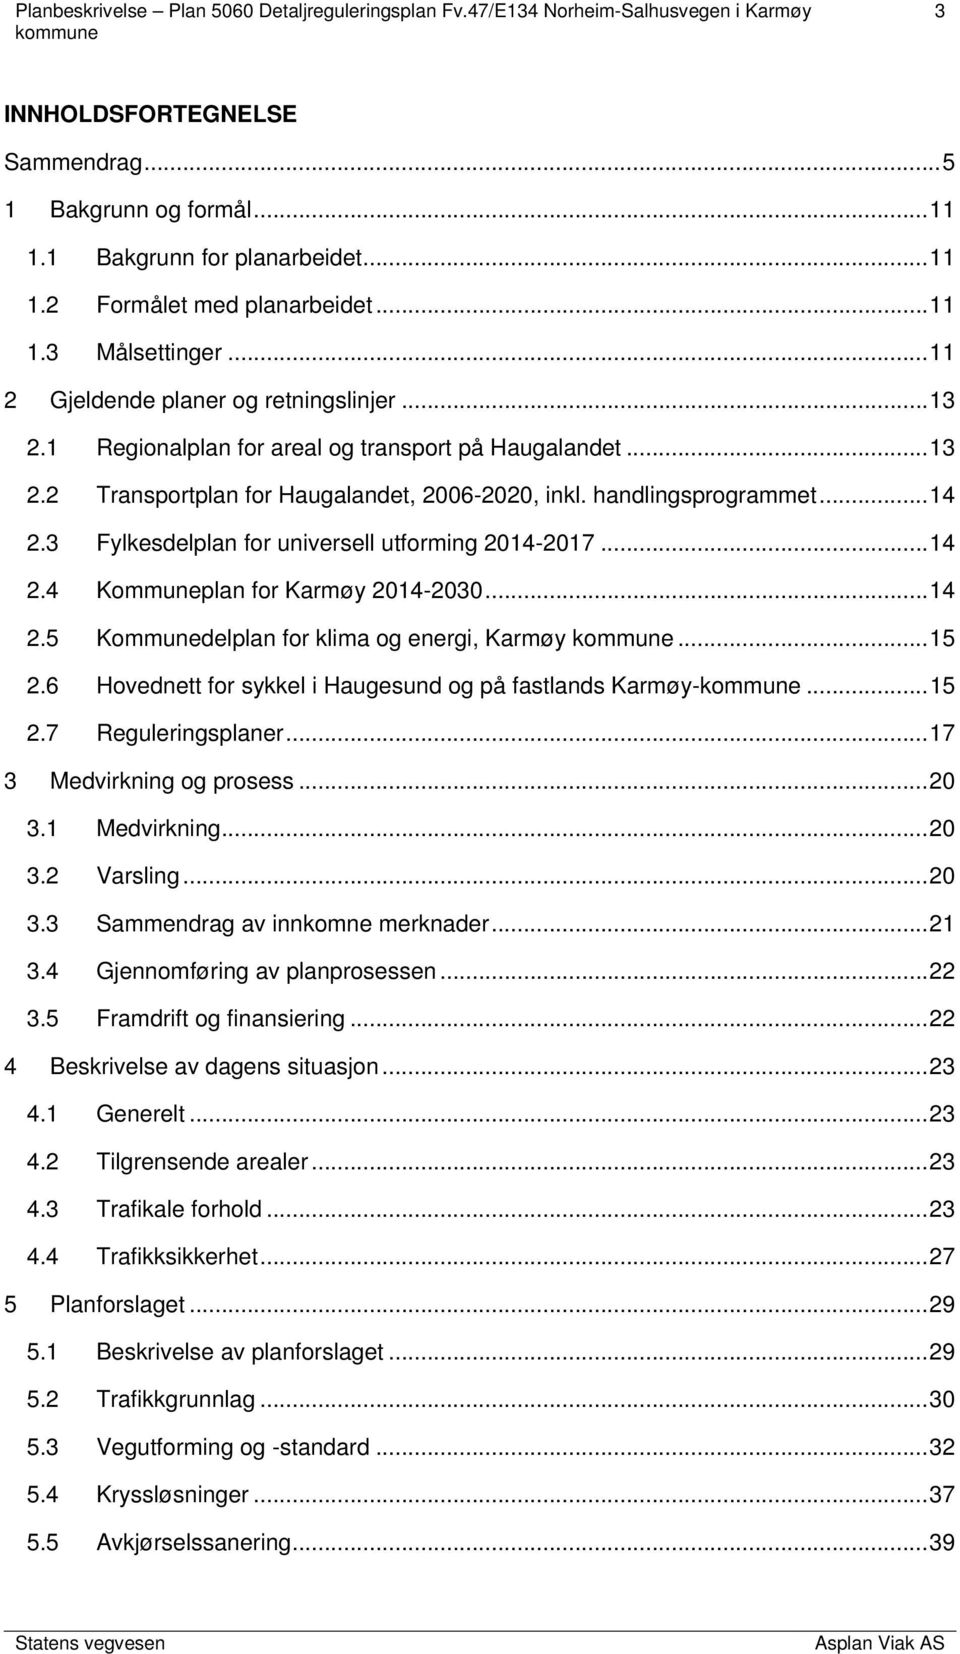 .. 14 2.4 Kommuneplan for Karmøy 2014-2030... 14 2.5 Kommunedelplan for klima og energi, Karmøy... 15 2.6 Hovednett for sykkel i Haugesund og på fastlands Karmøy-... 15 2.7 Reguleringsplaner.